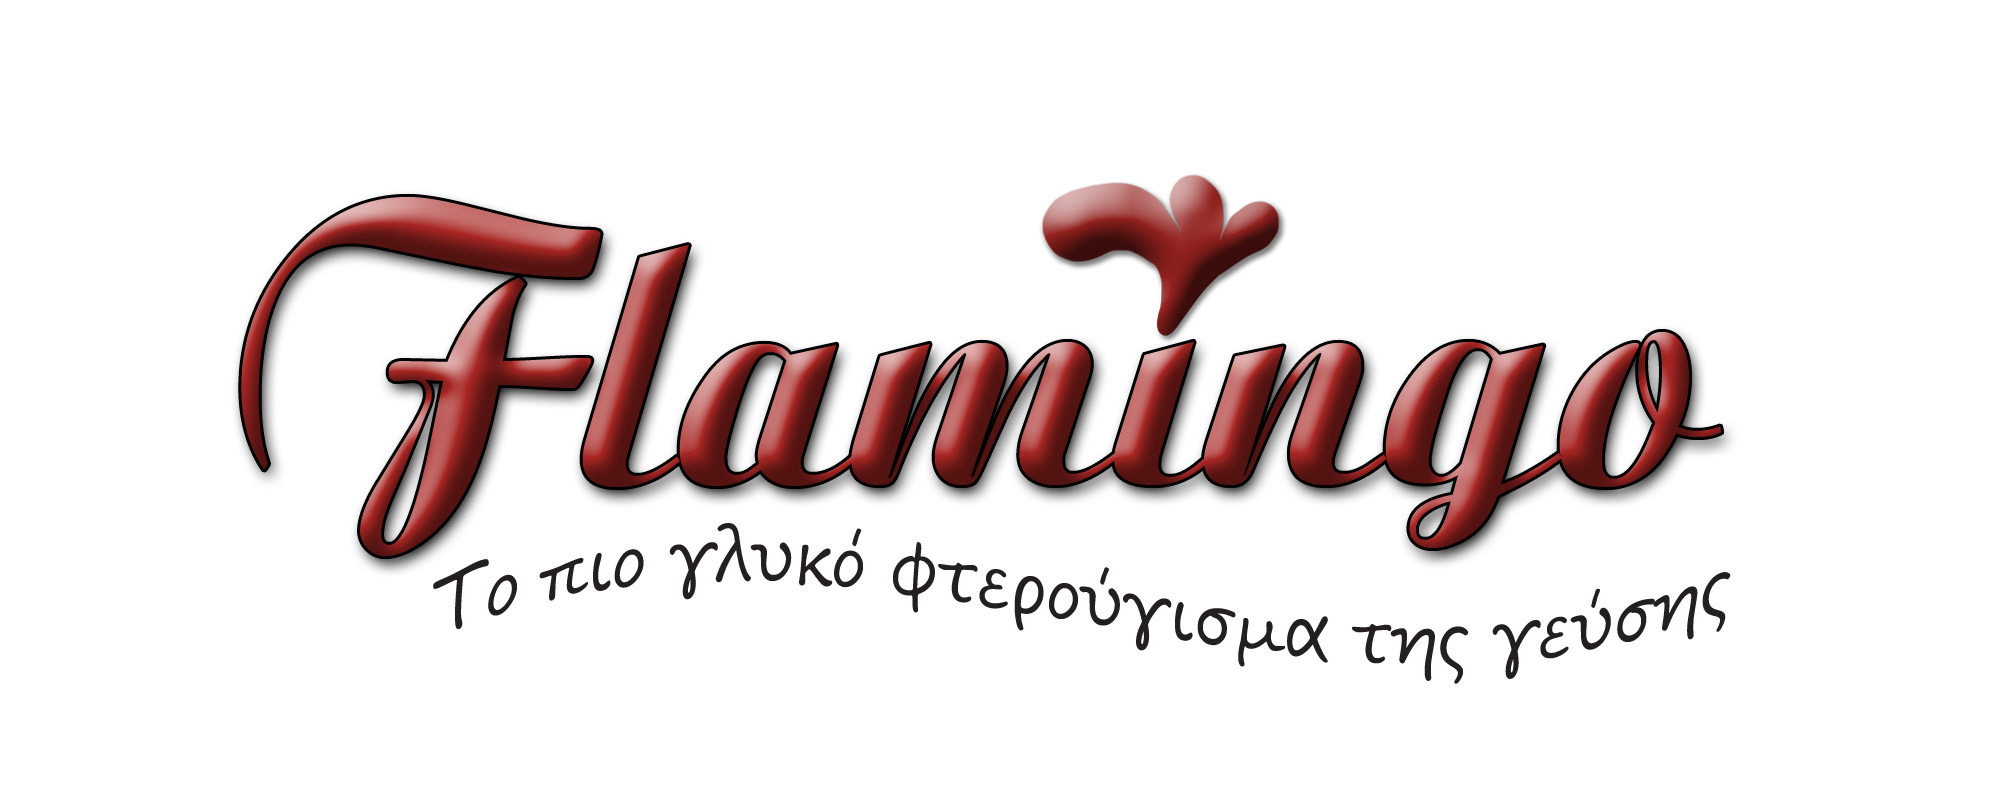 Εργαστήριο Ζαχαροπλαστικής - Catering Flamingo - Ιωάννης Χρυσαφόπουλος